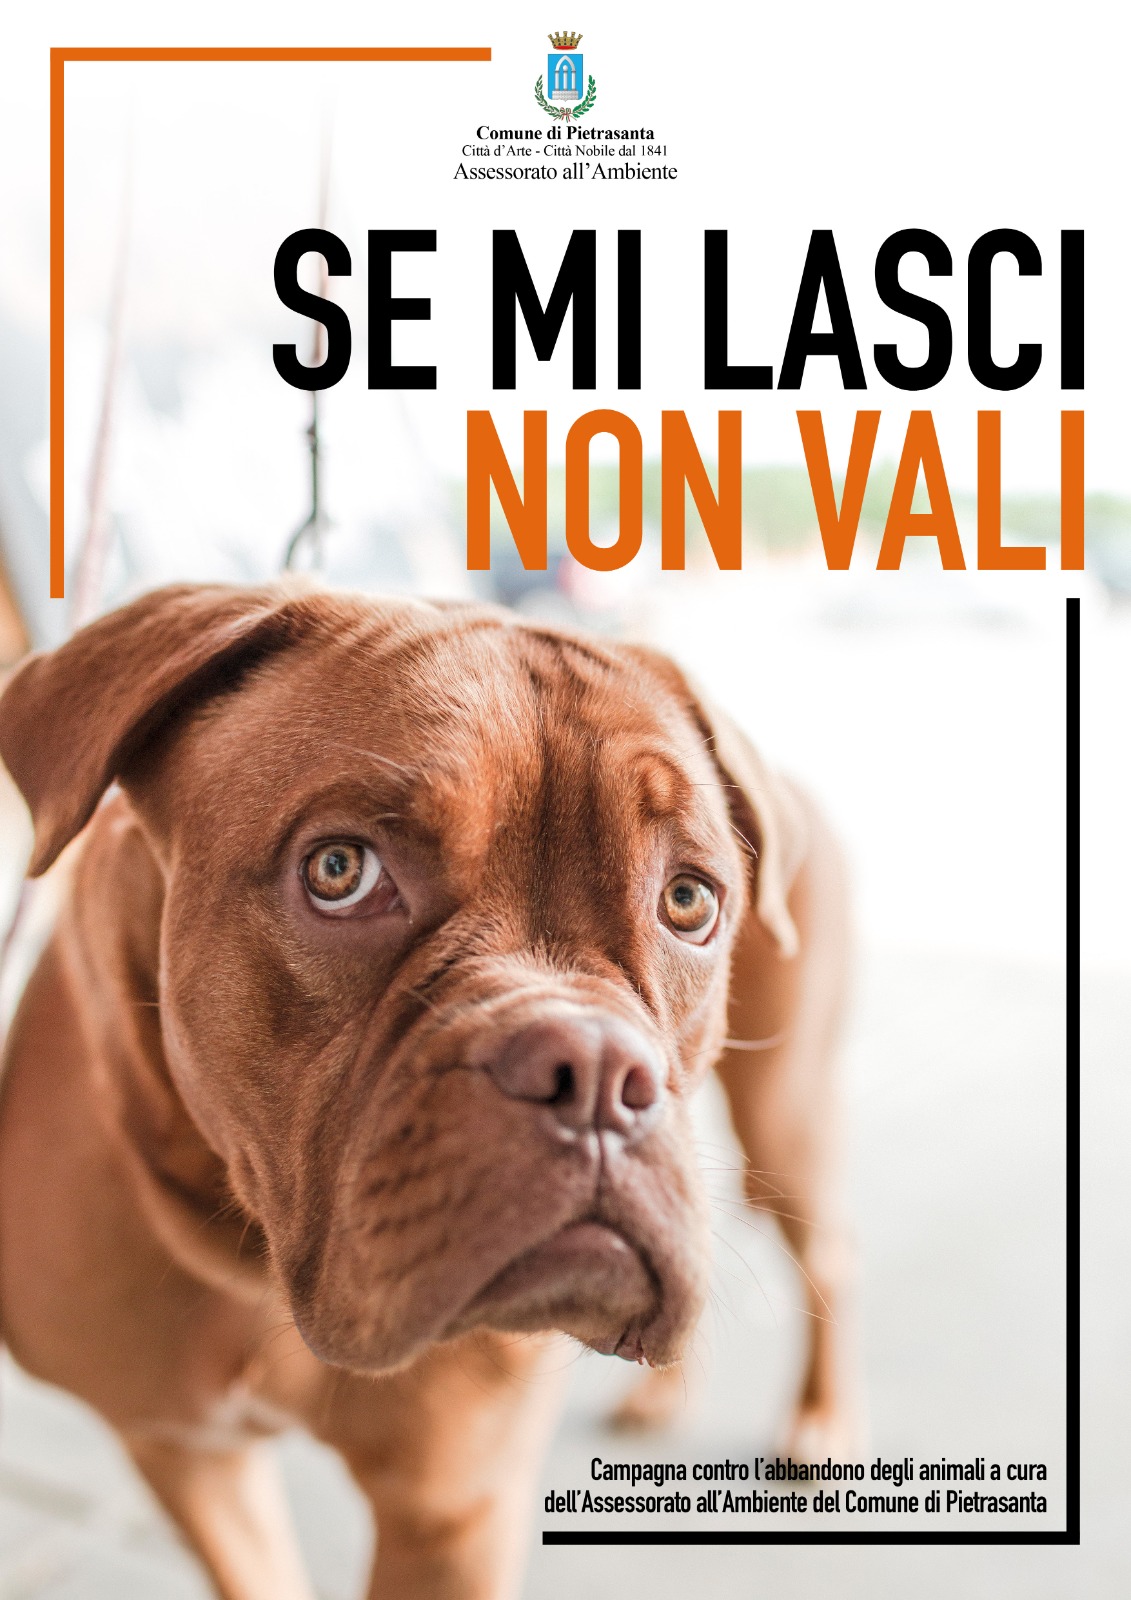 Animali: “Se mi lasci non vali”, campagna del comune di Pietrasanta contro gli abbandoni. Spiagge e strutture sono pet-friendly: chi abbandona non è benvenuto